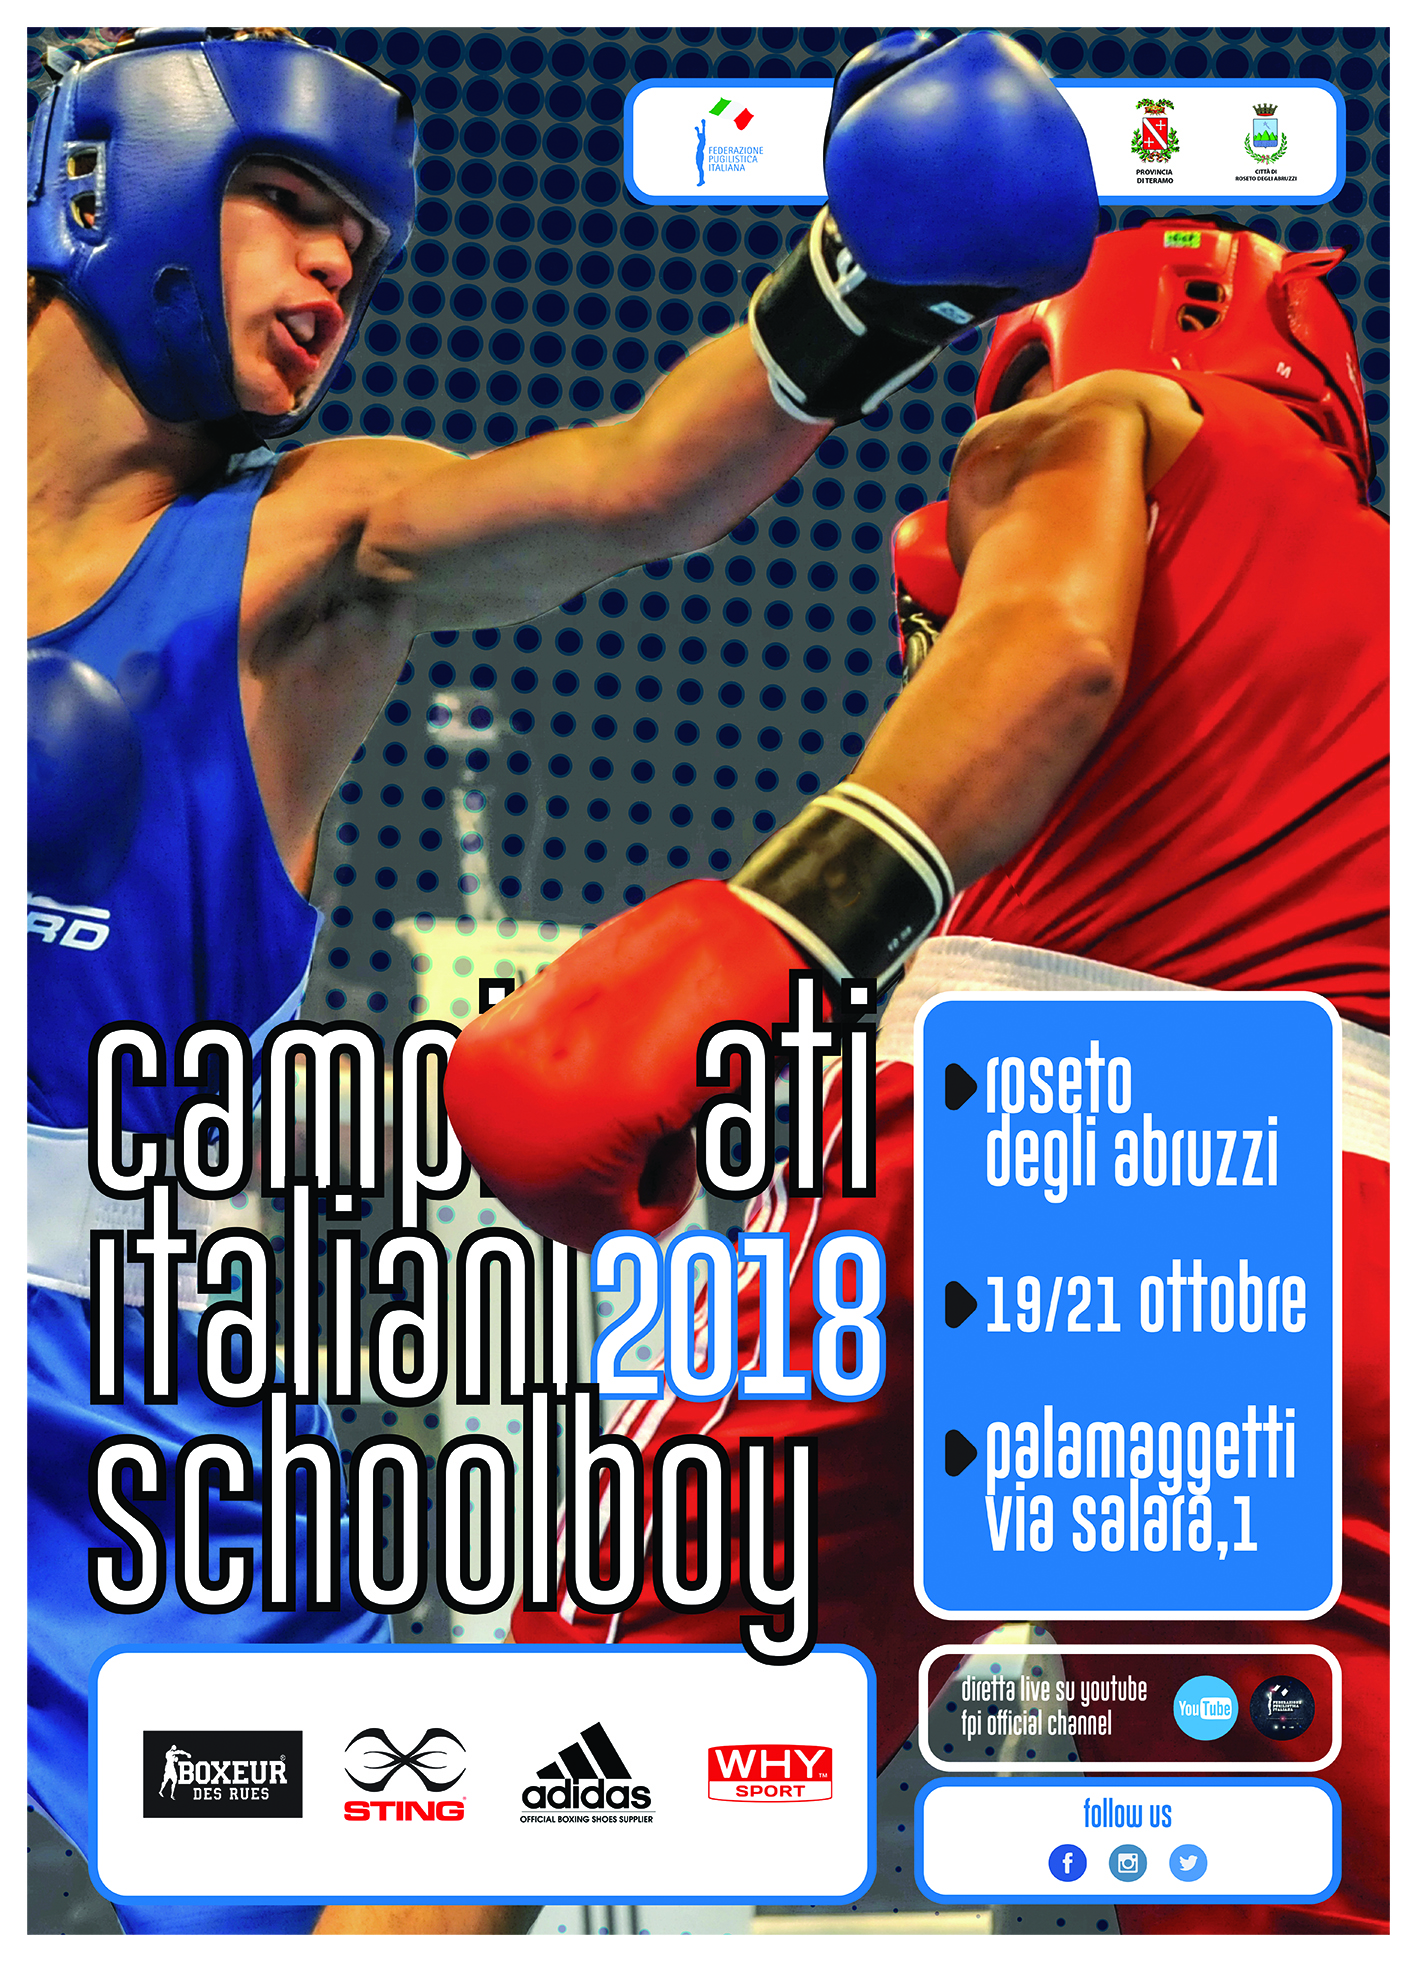 Campionati Italiani Schoolboy 2018 Roseto degli Abruzzi 19-21 Ottobre: la Locandina Ufficiale #SchoolBoy18